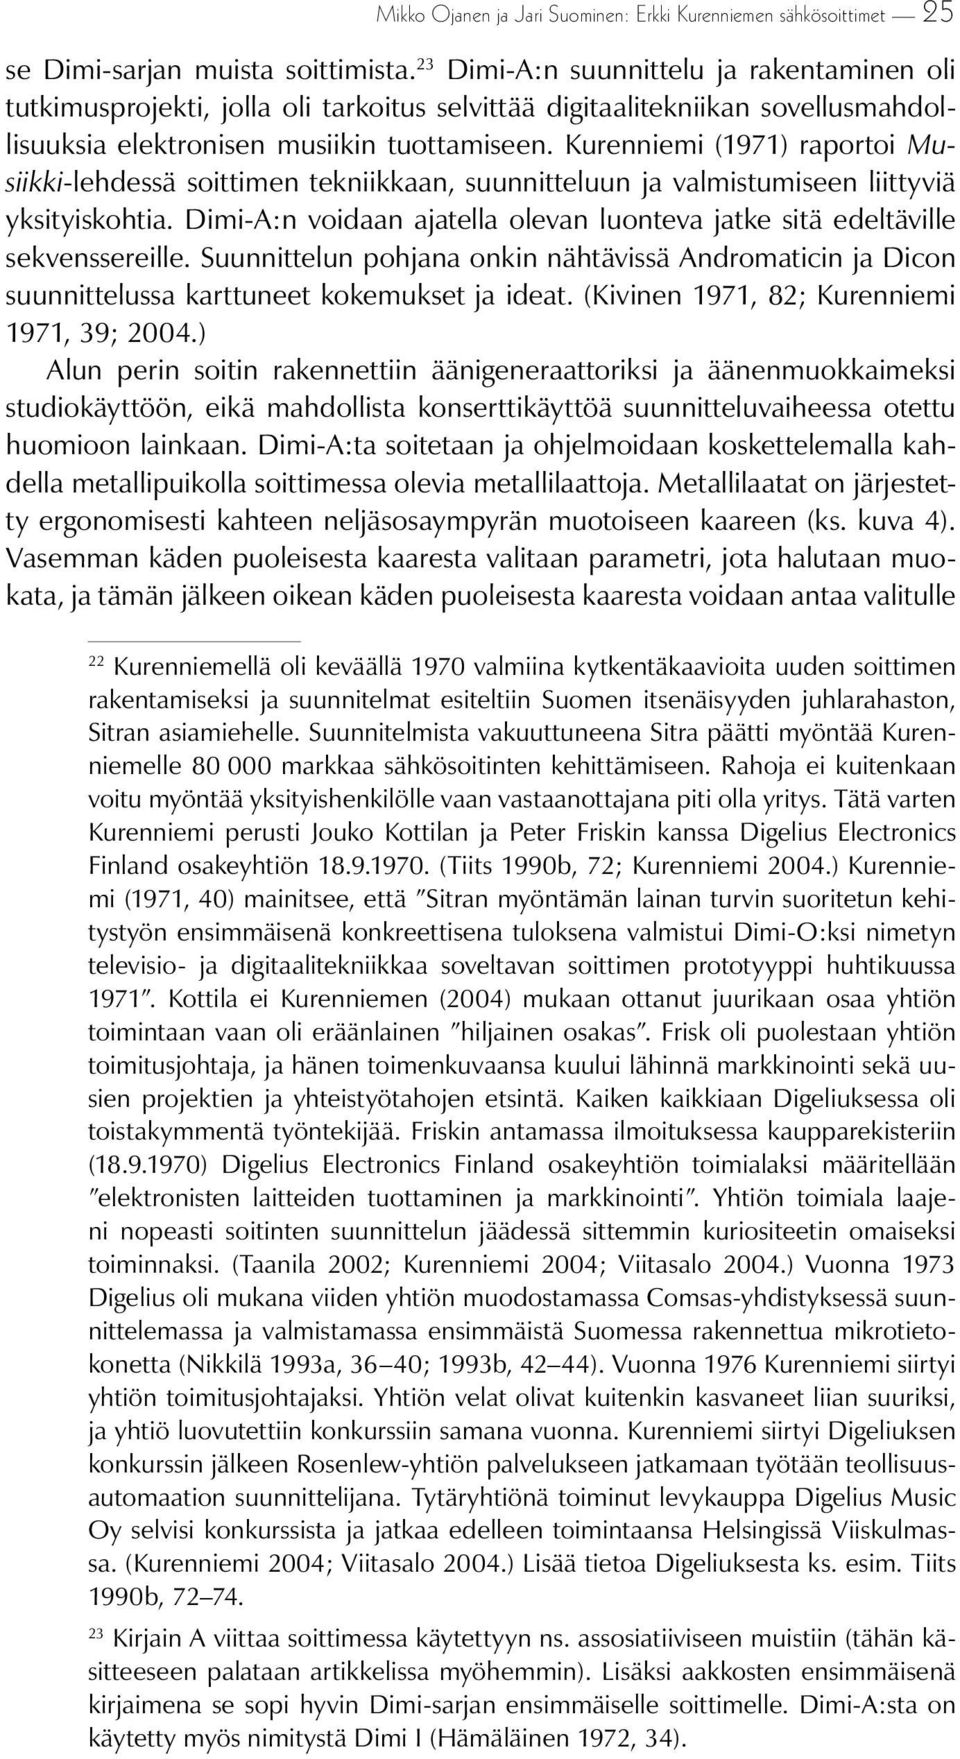 Kurenniemi (1971) raportoi Musiikki-lehdessä soittimen tekniikkaan, suunnitteluun ja valmistumiseen liittyviä yksityiskohtia.